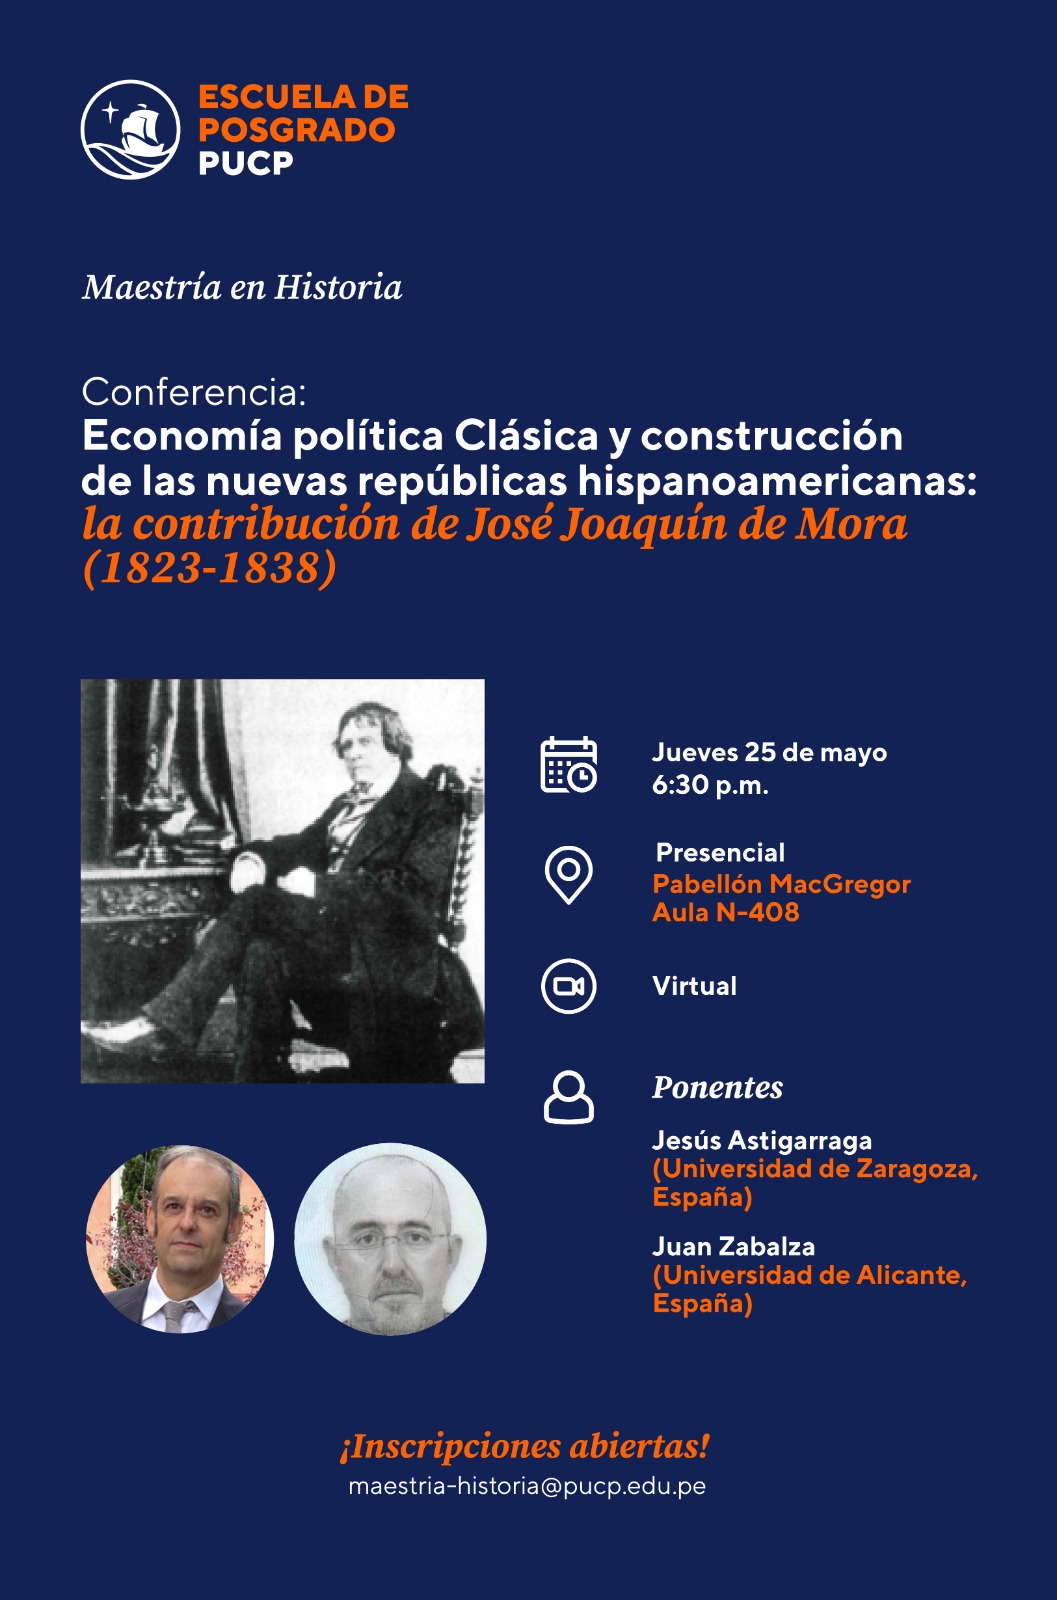 Conferencia | Economía política Clásica y construcción de las nuevas repúblicas hispanoamericanas